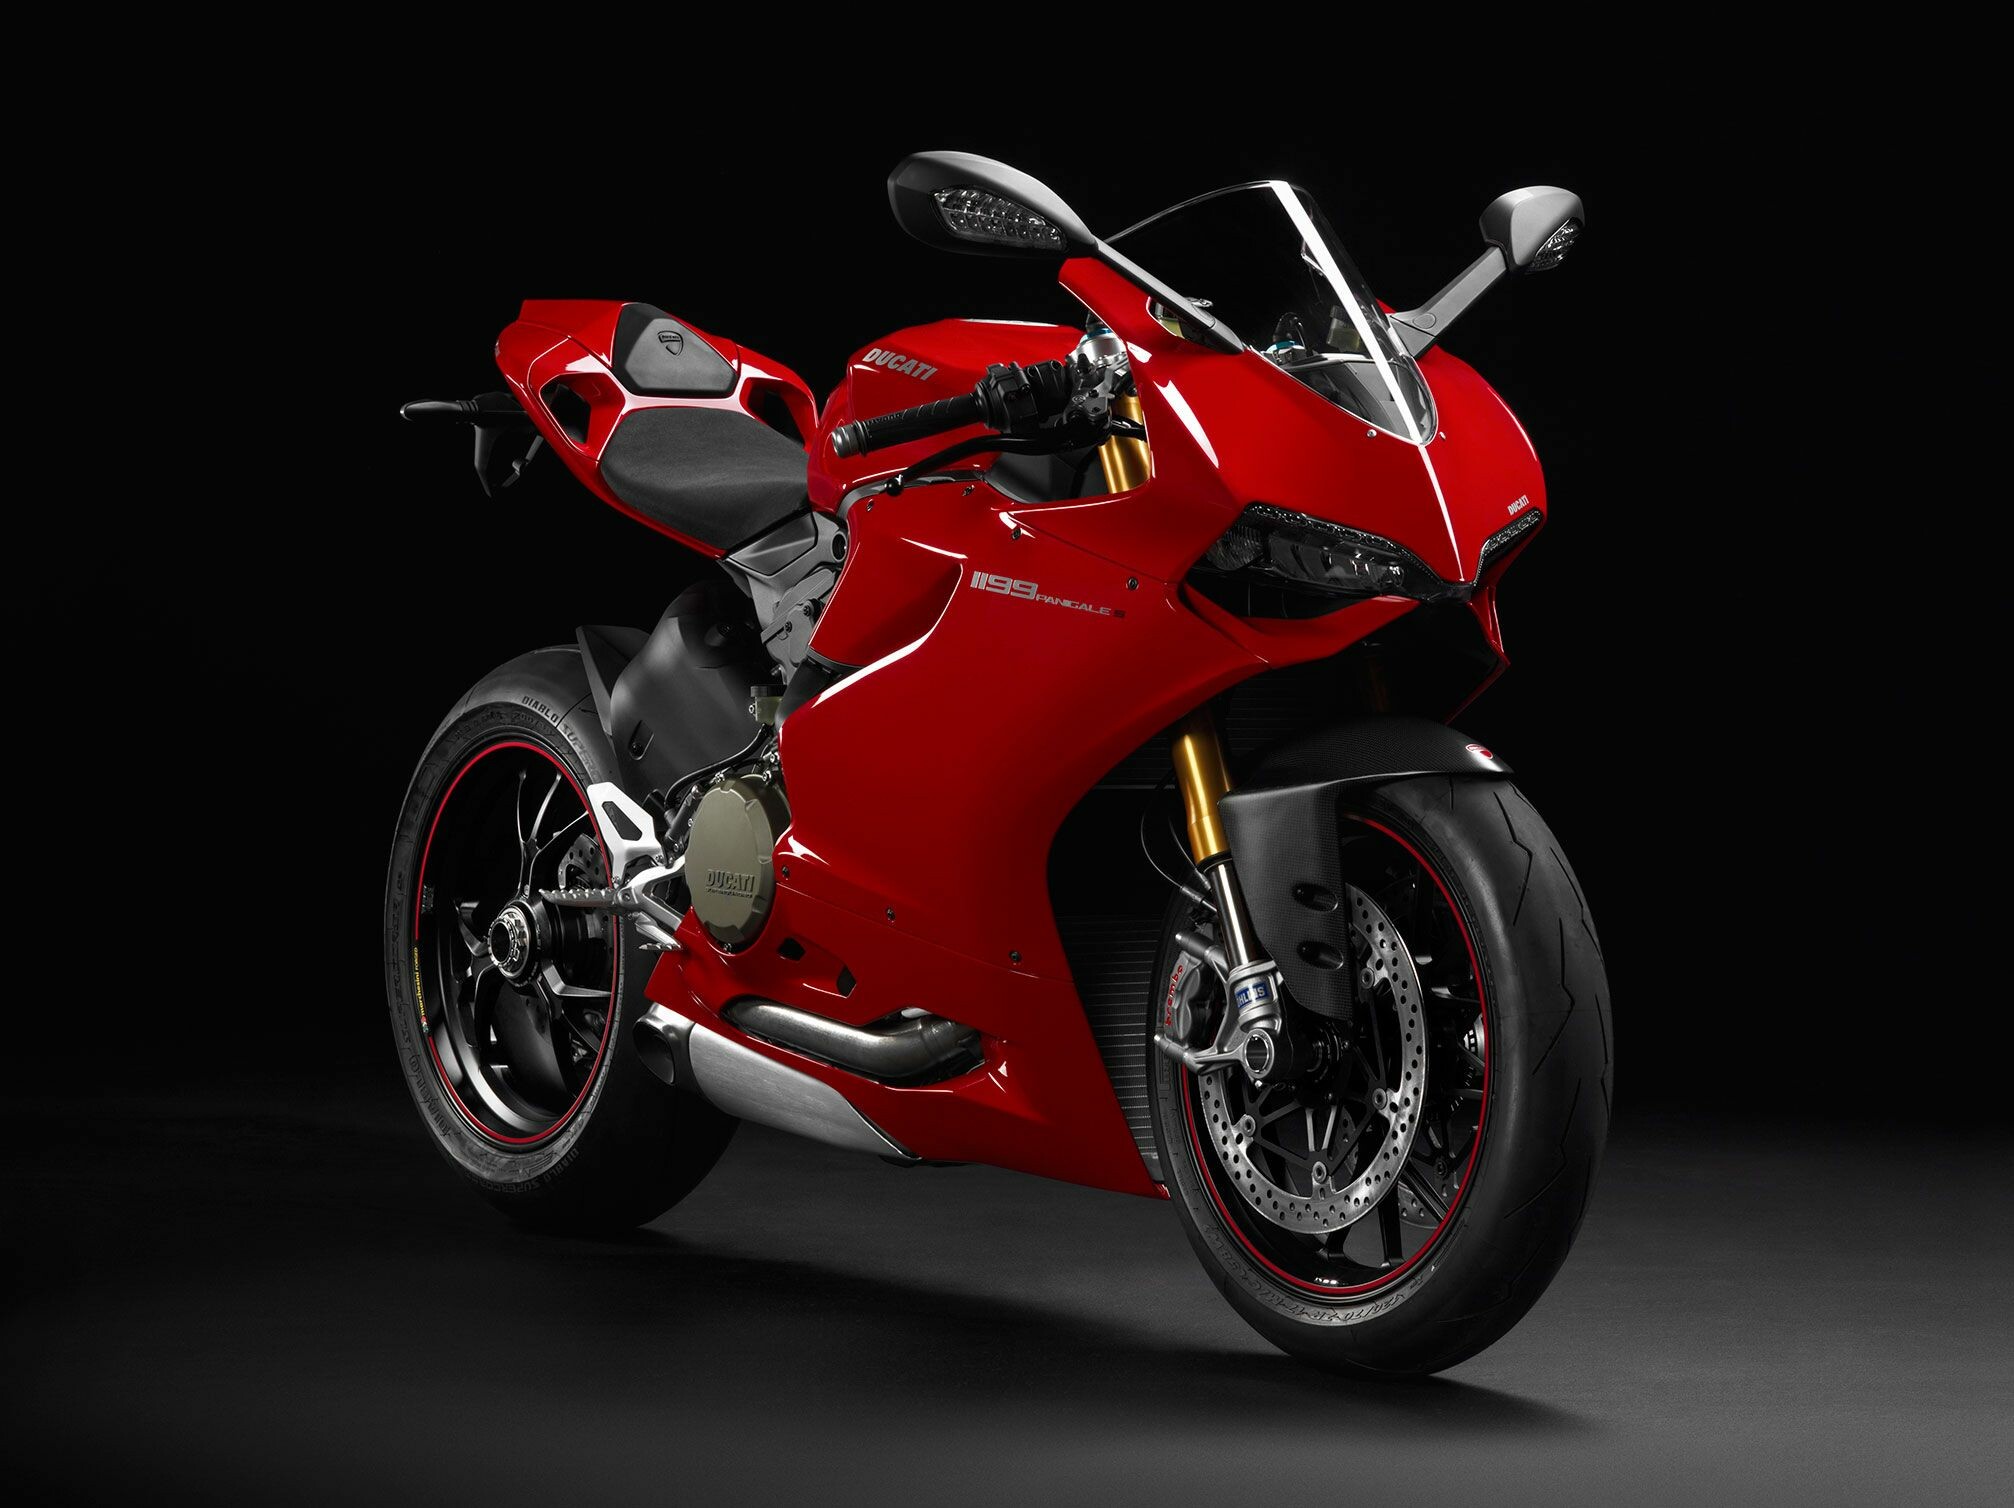 Ducati: 899 Panigale, A 898 cc (54.8 cu in) sport bike, released in 2013. 2020x1510 HD Background.